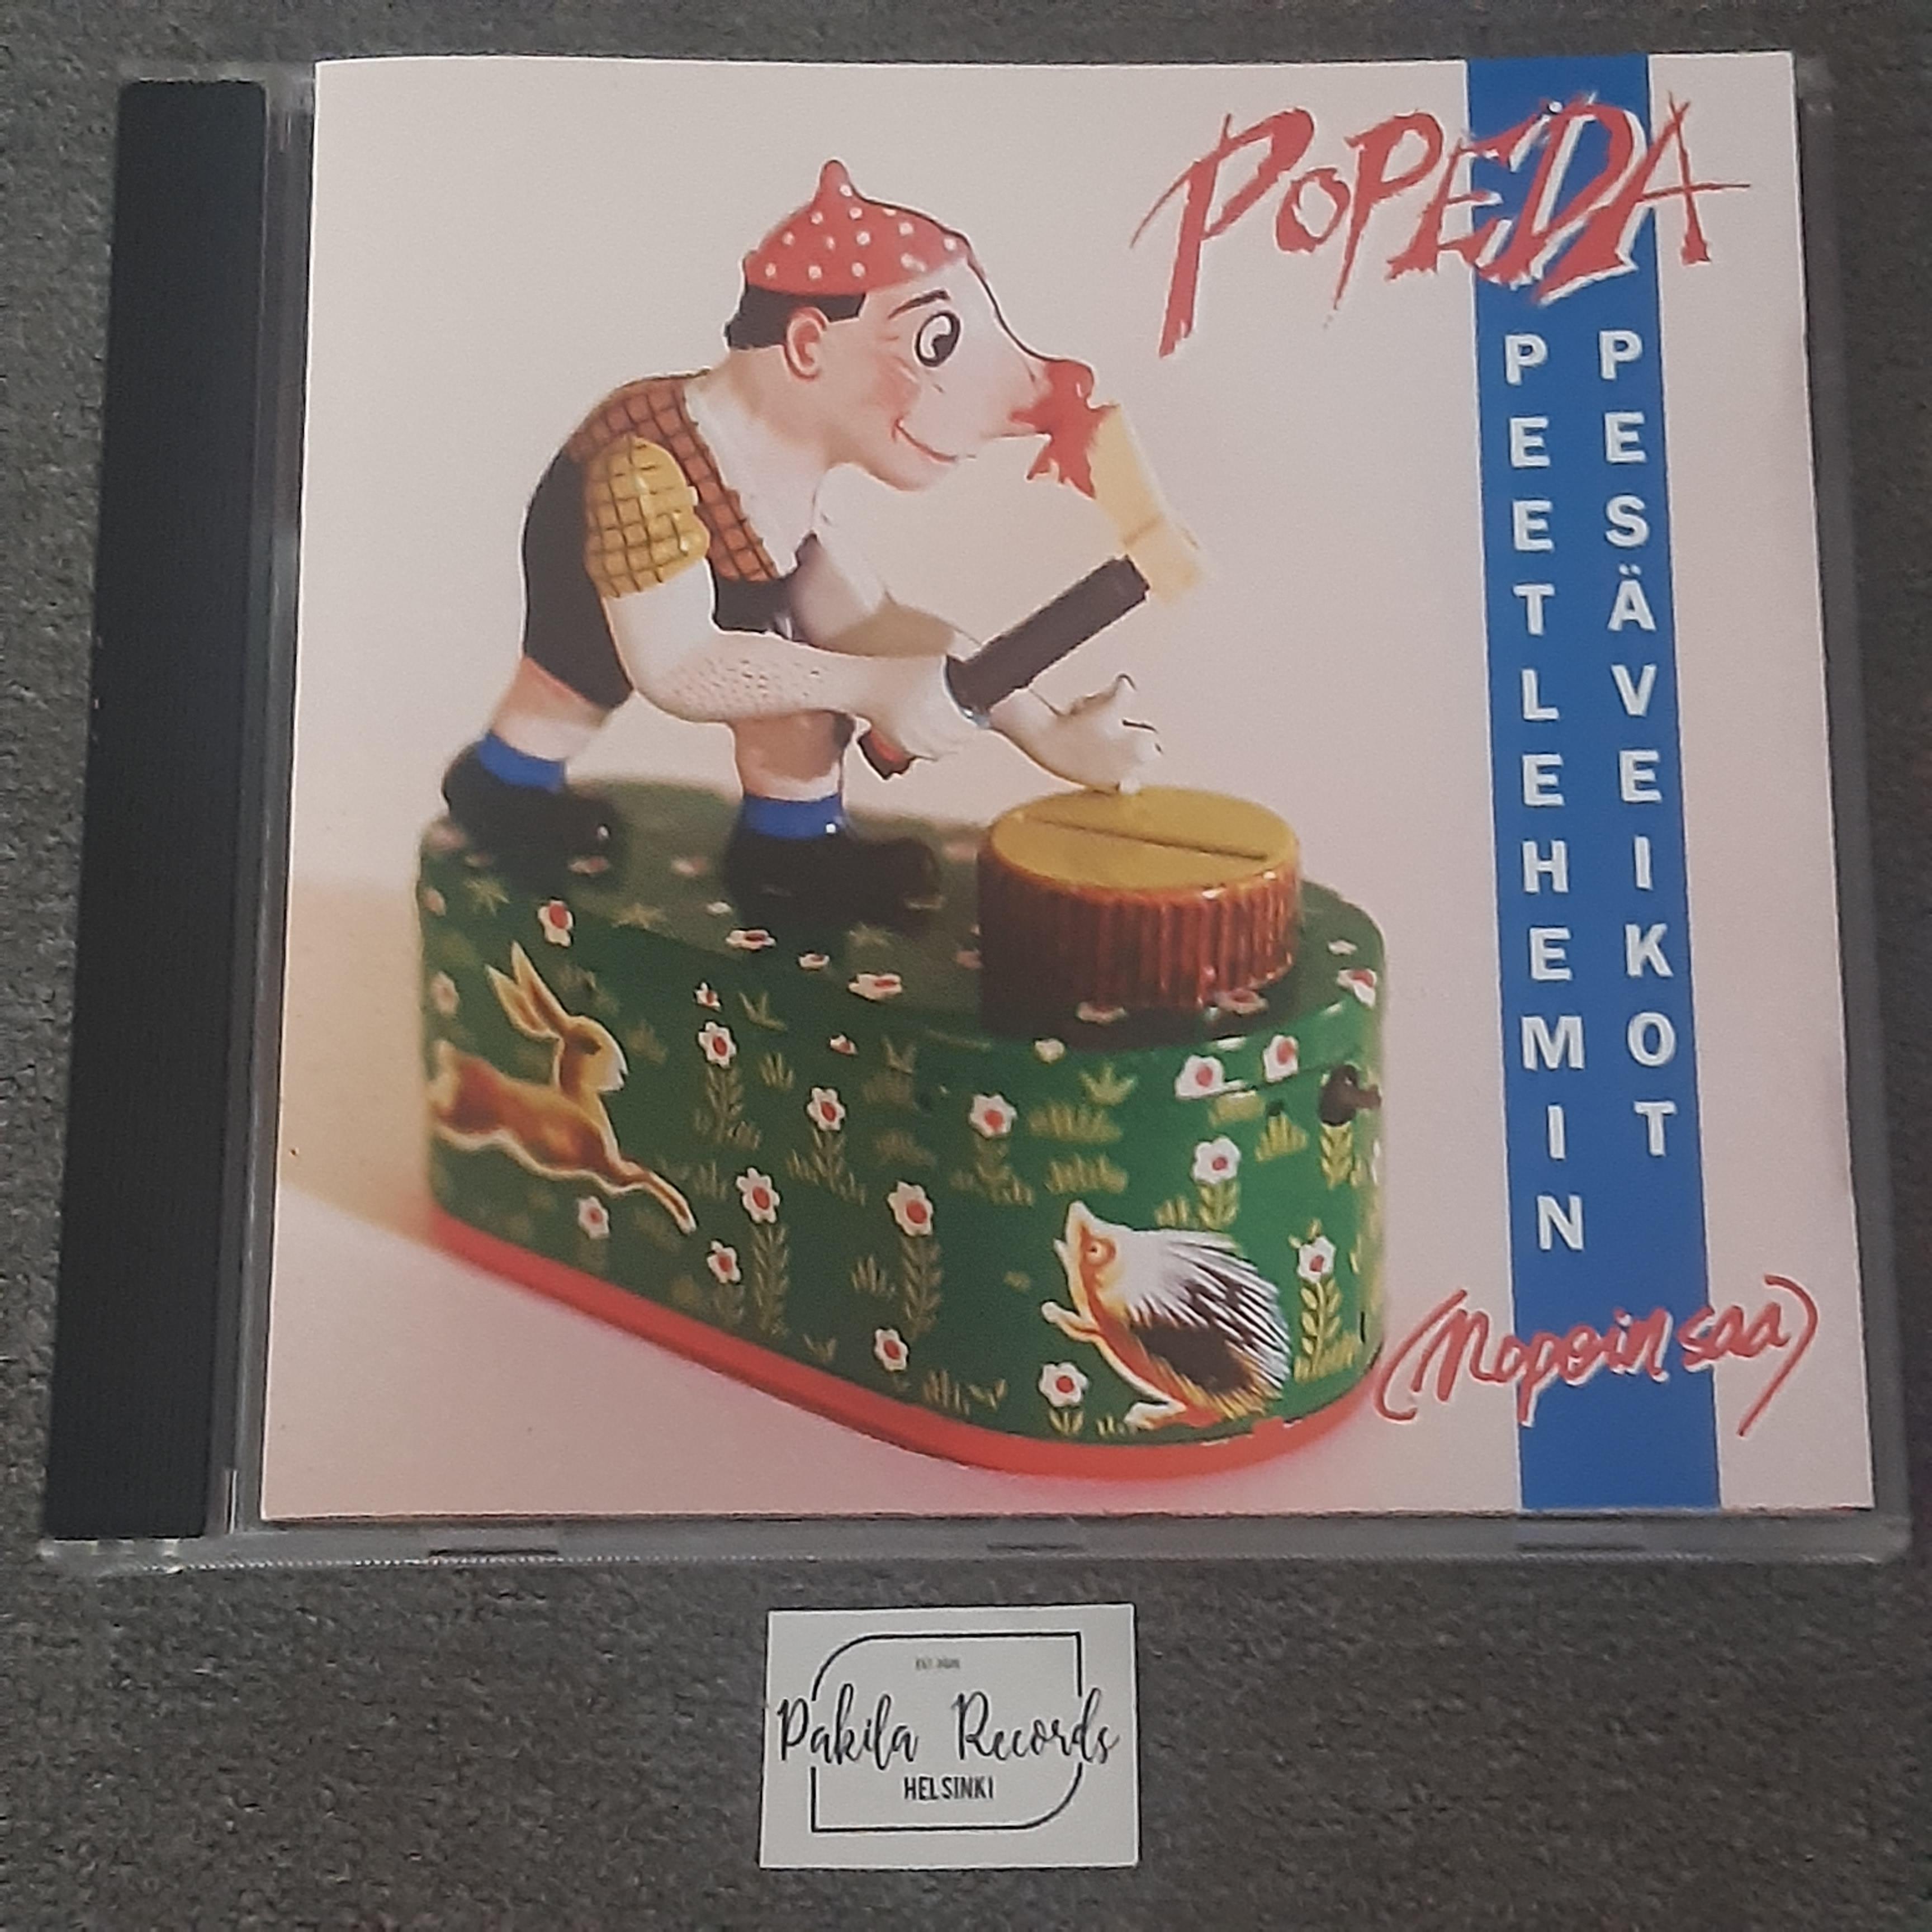 Popeda - Peetlehemin pesäveikot (Nopein saa) - CD (käytetty)